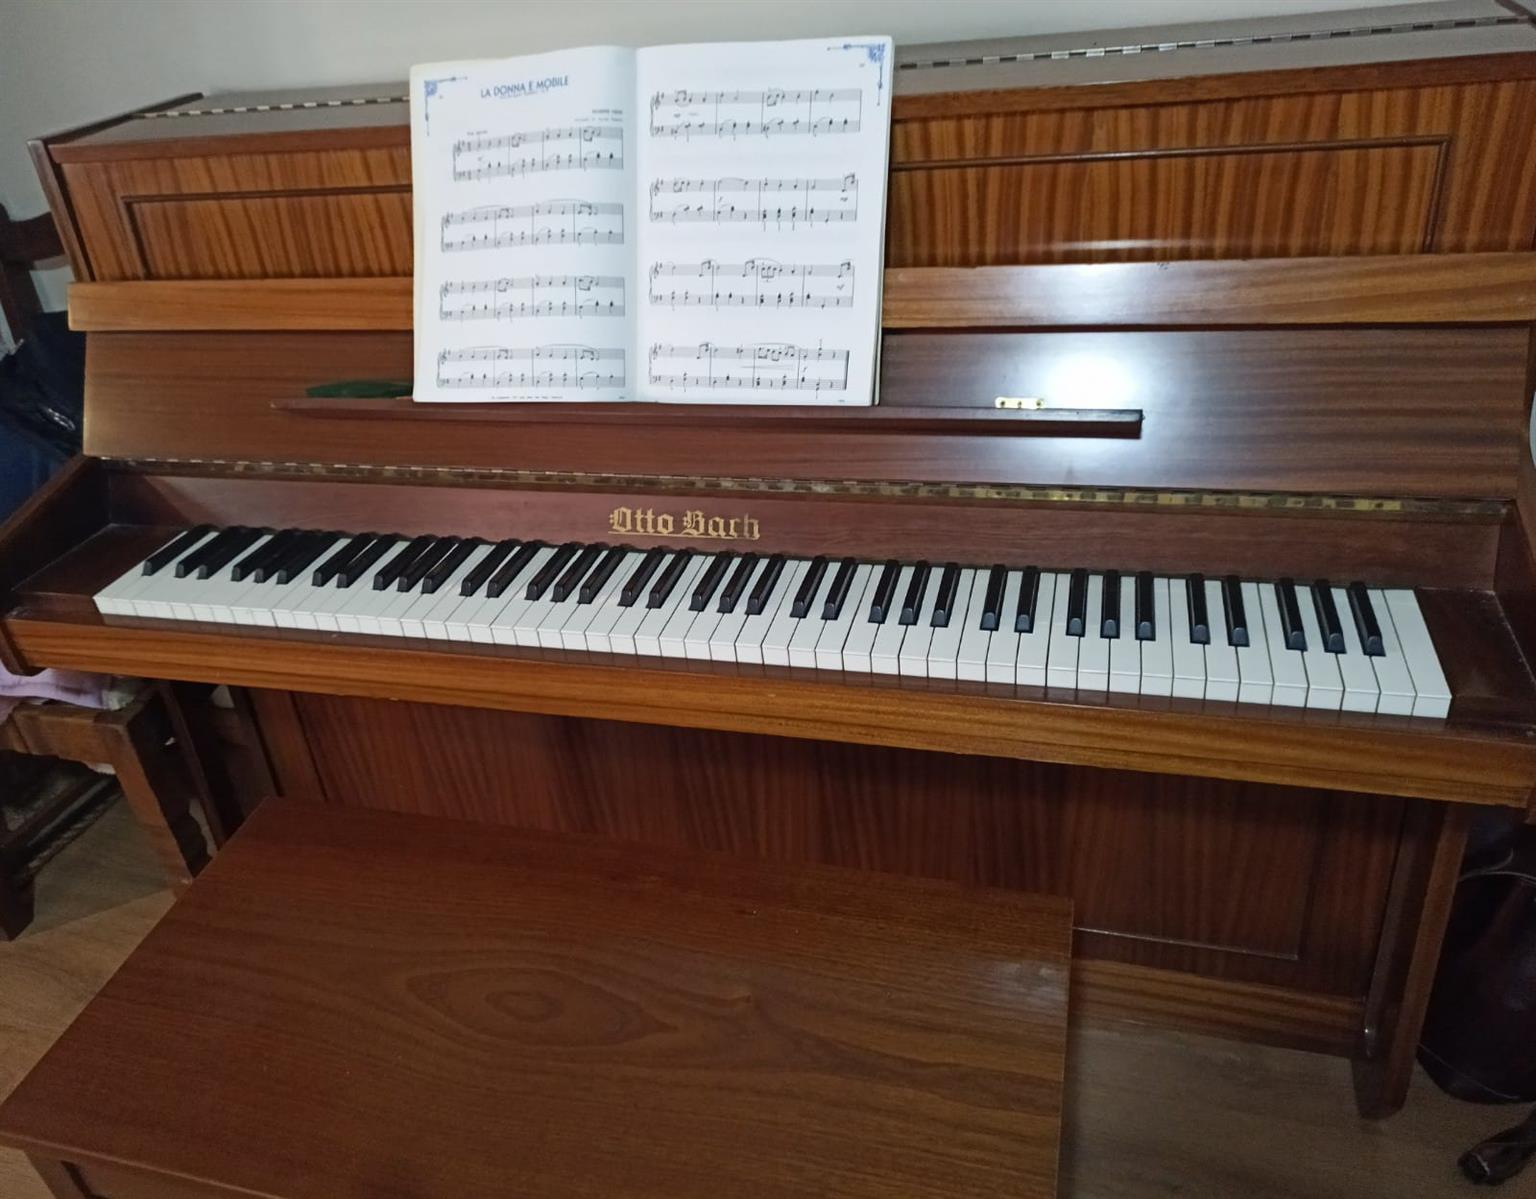 Arruinado Acumulativo Integral Otto Bach Upright Piano for Sale. | Junk Mail